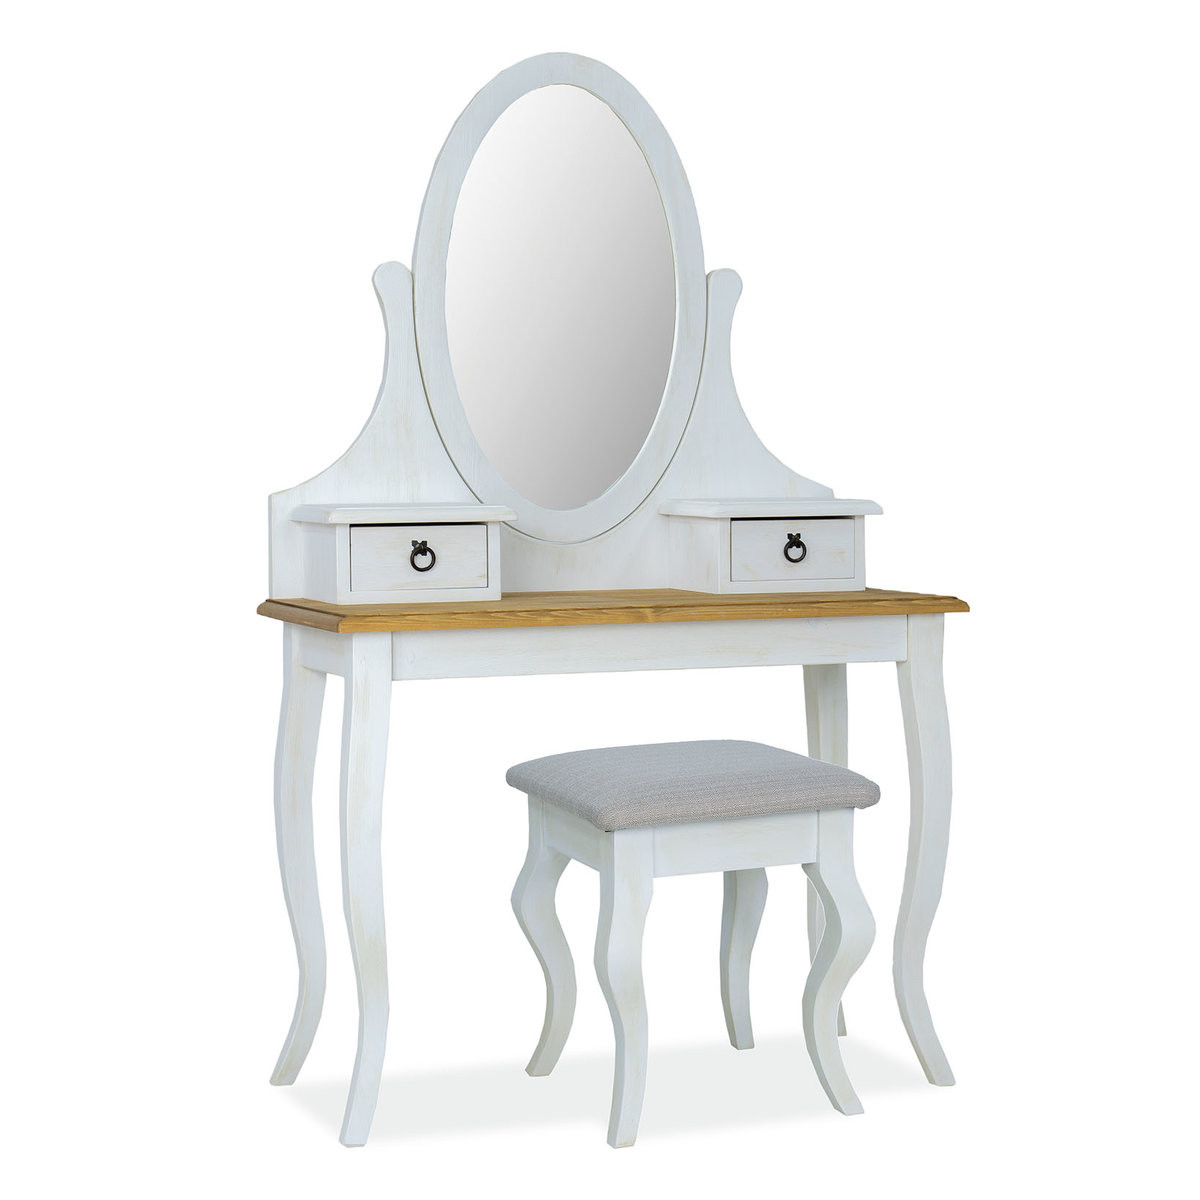 Столик туалетный SIGNAL POPRAD (белый/медовый)